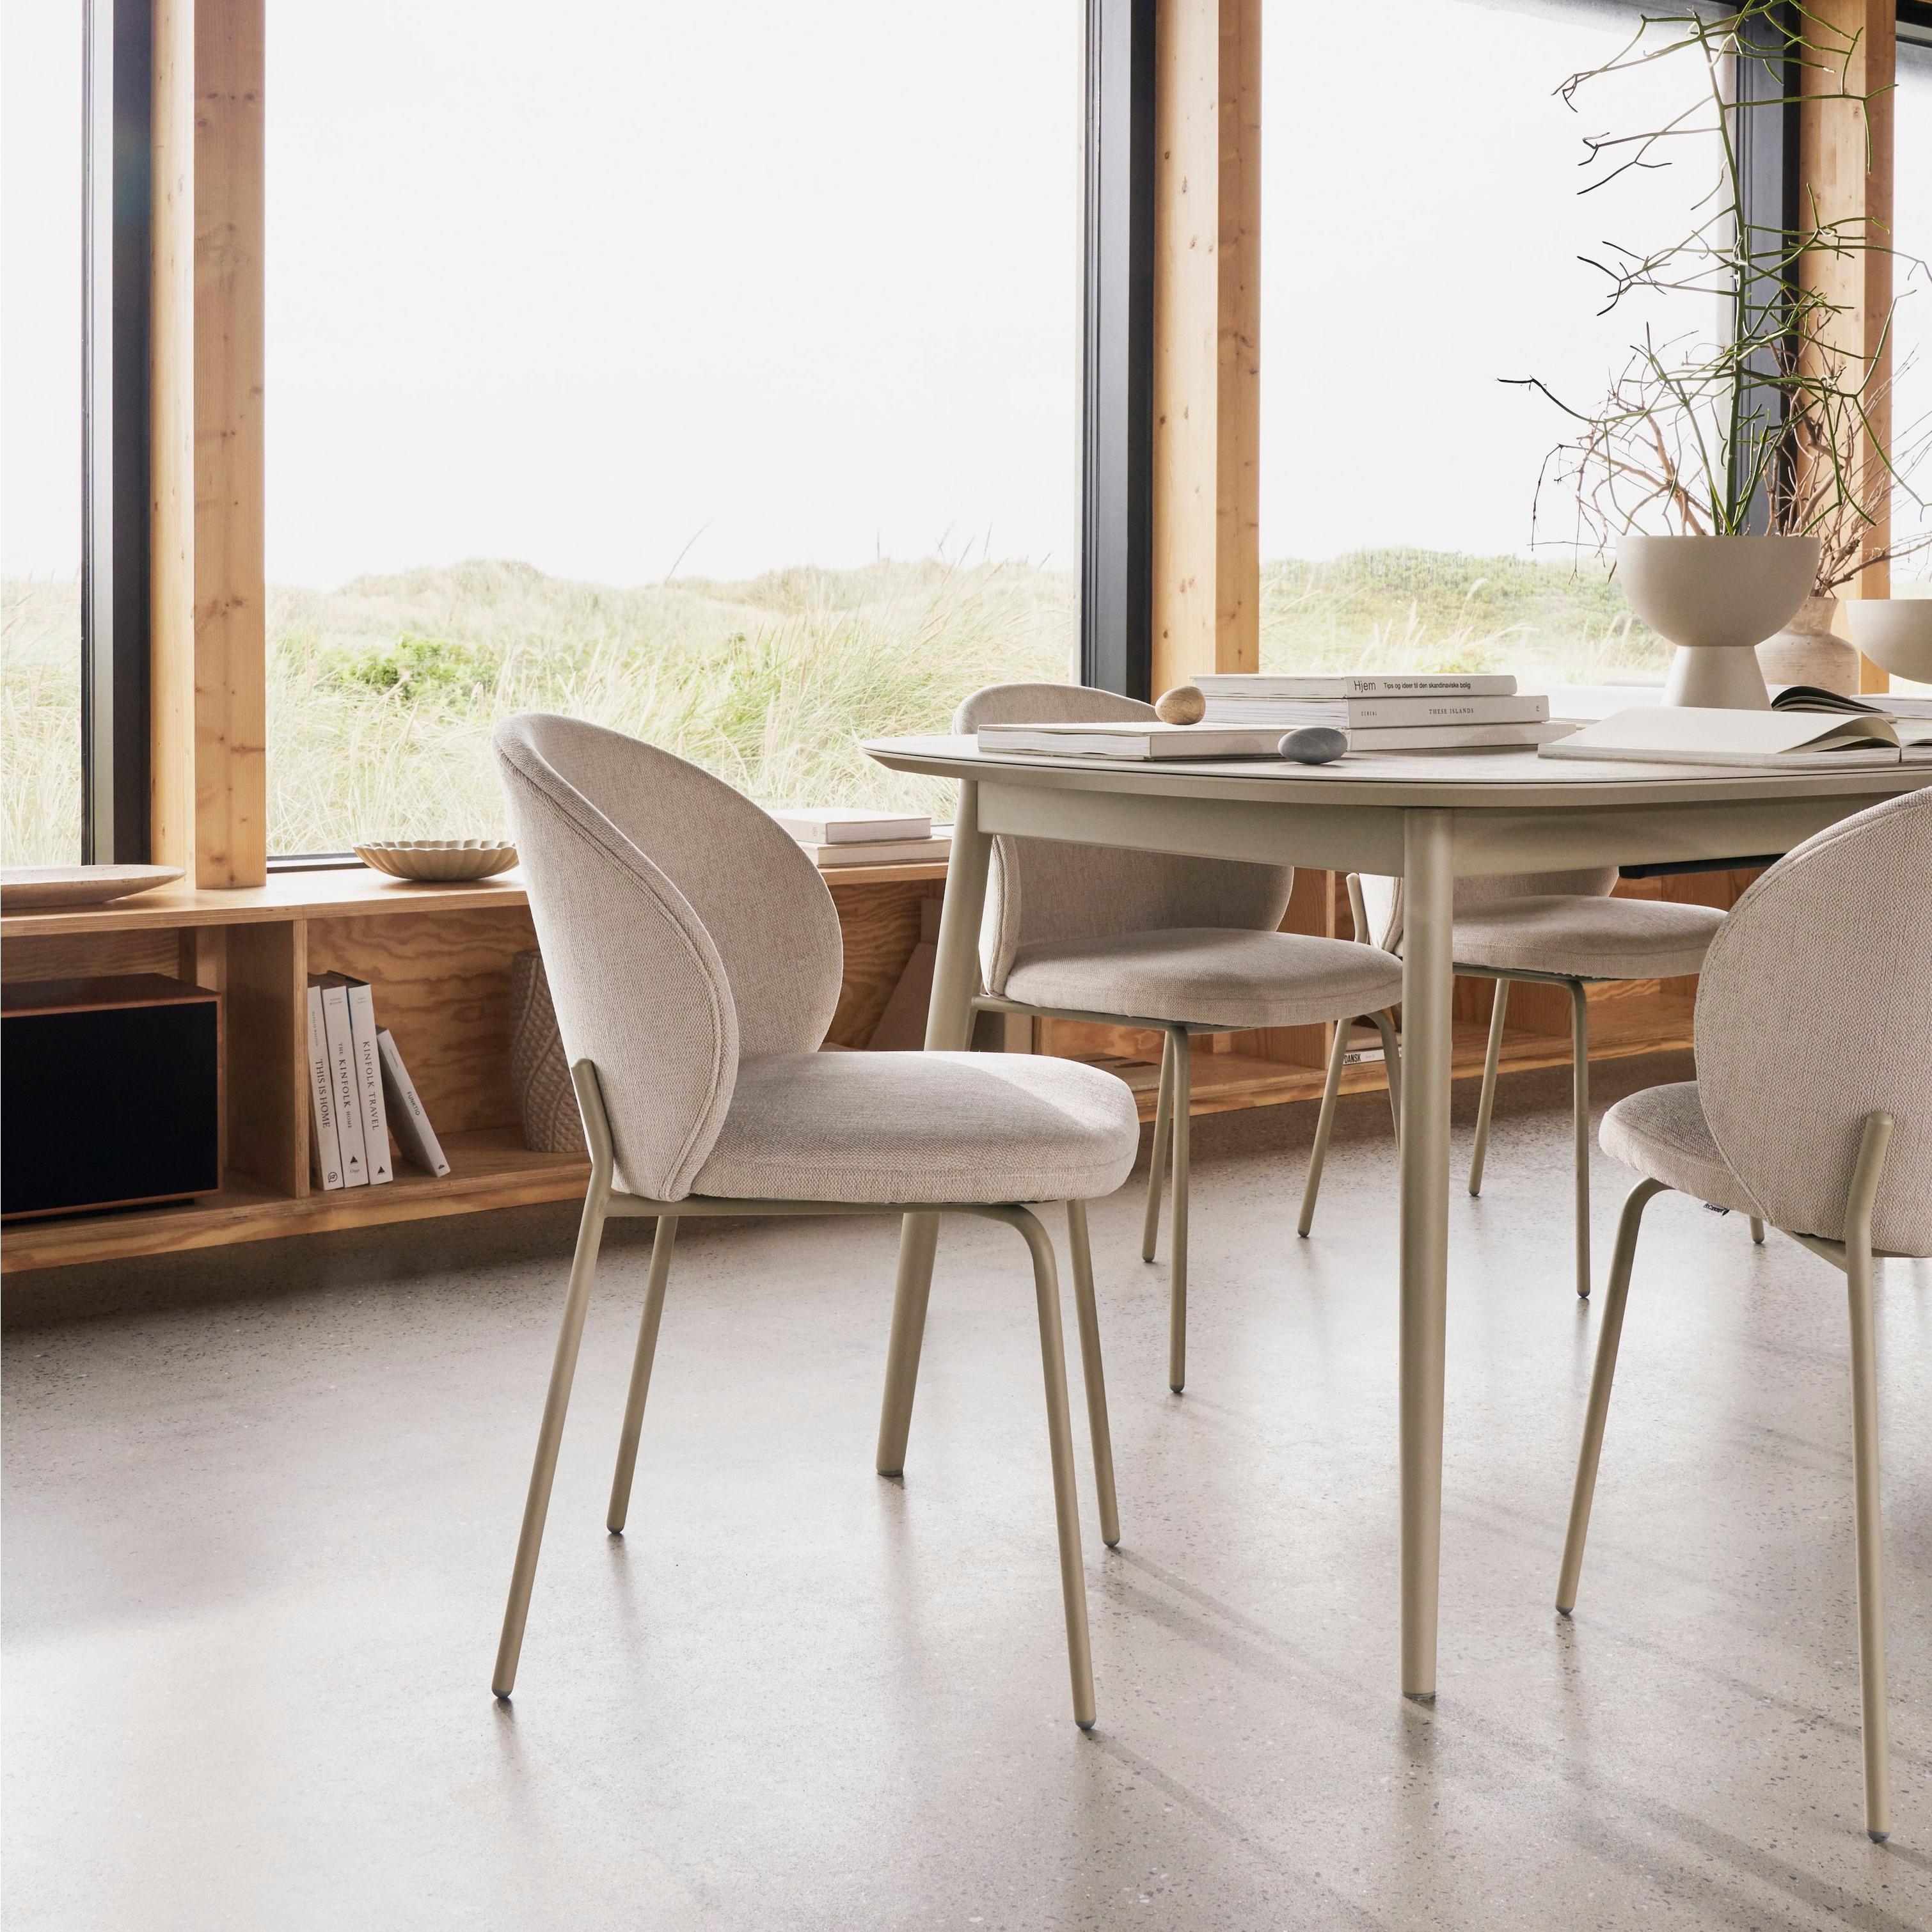 Moderní prosluněná jídelna s jídelním stolem Kingston a jídelními židlemi Princeton.